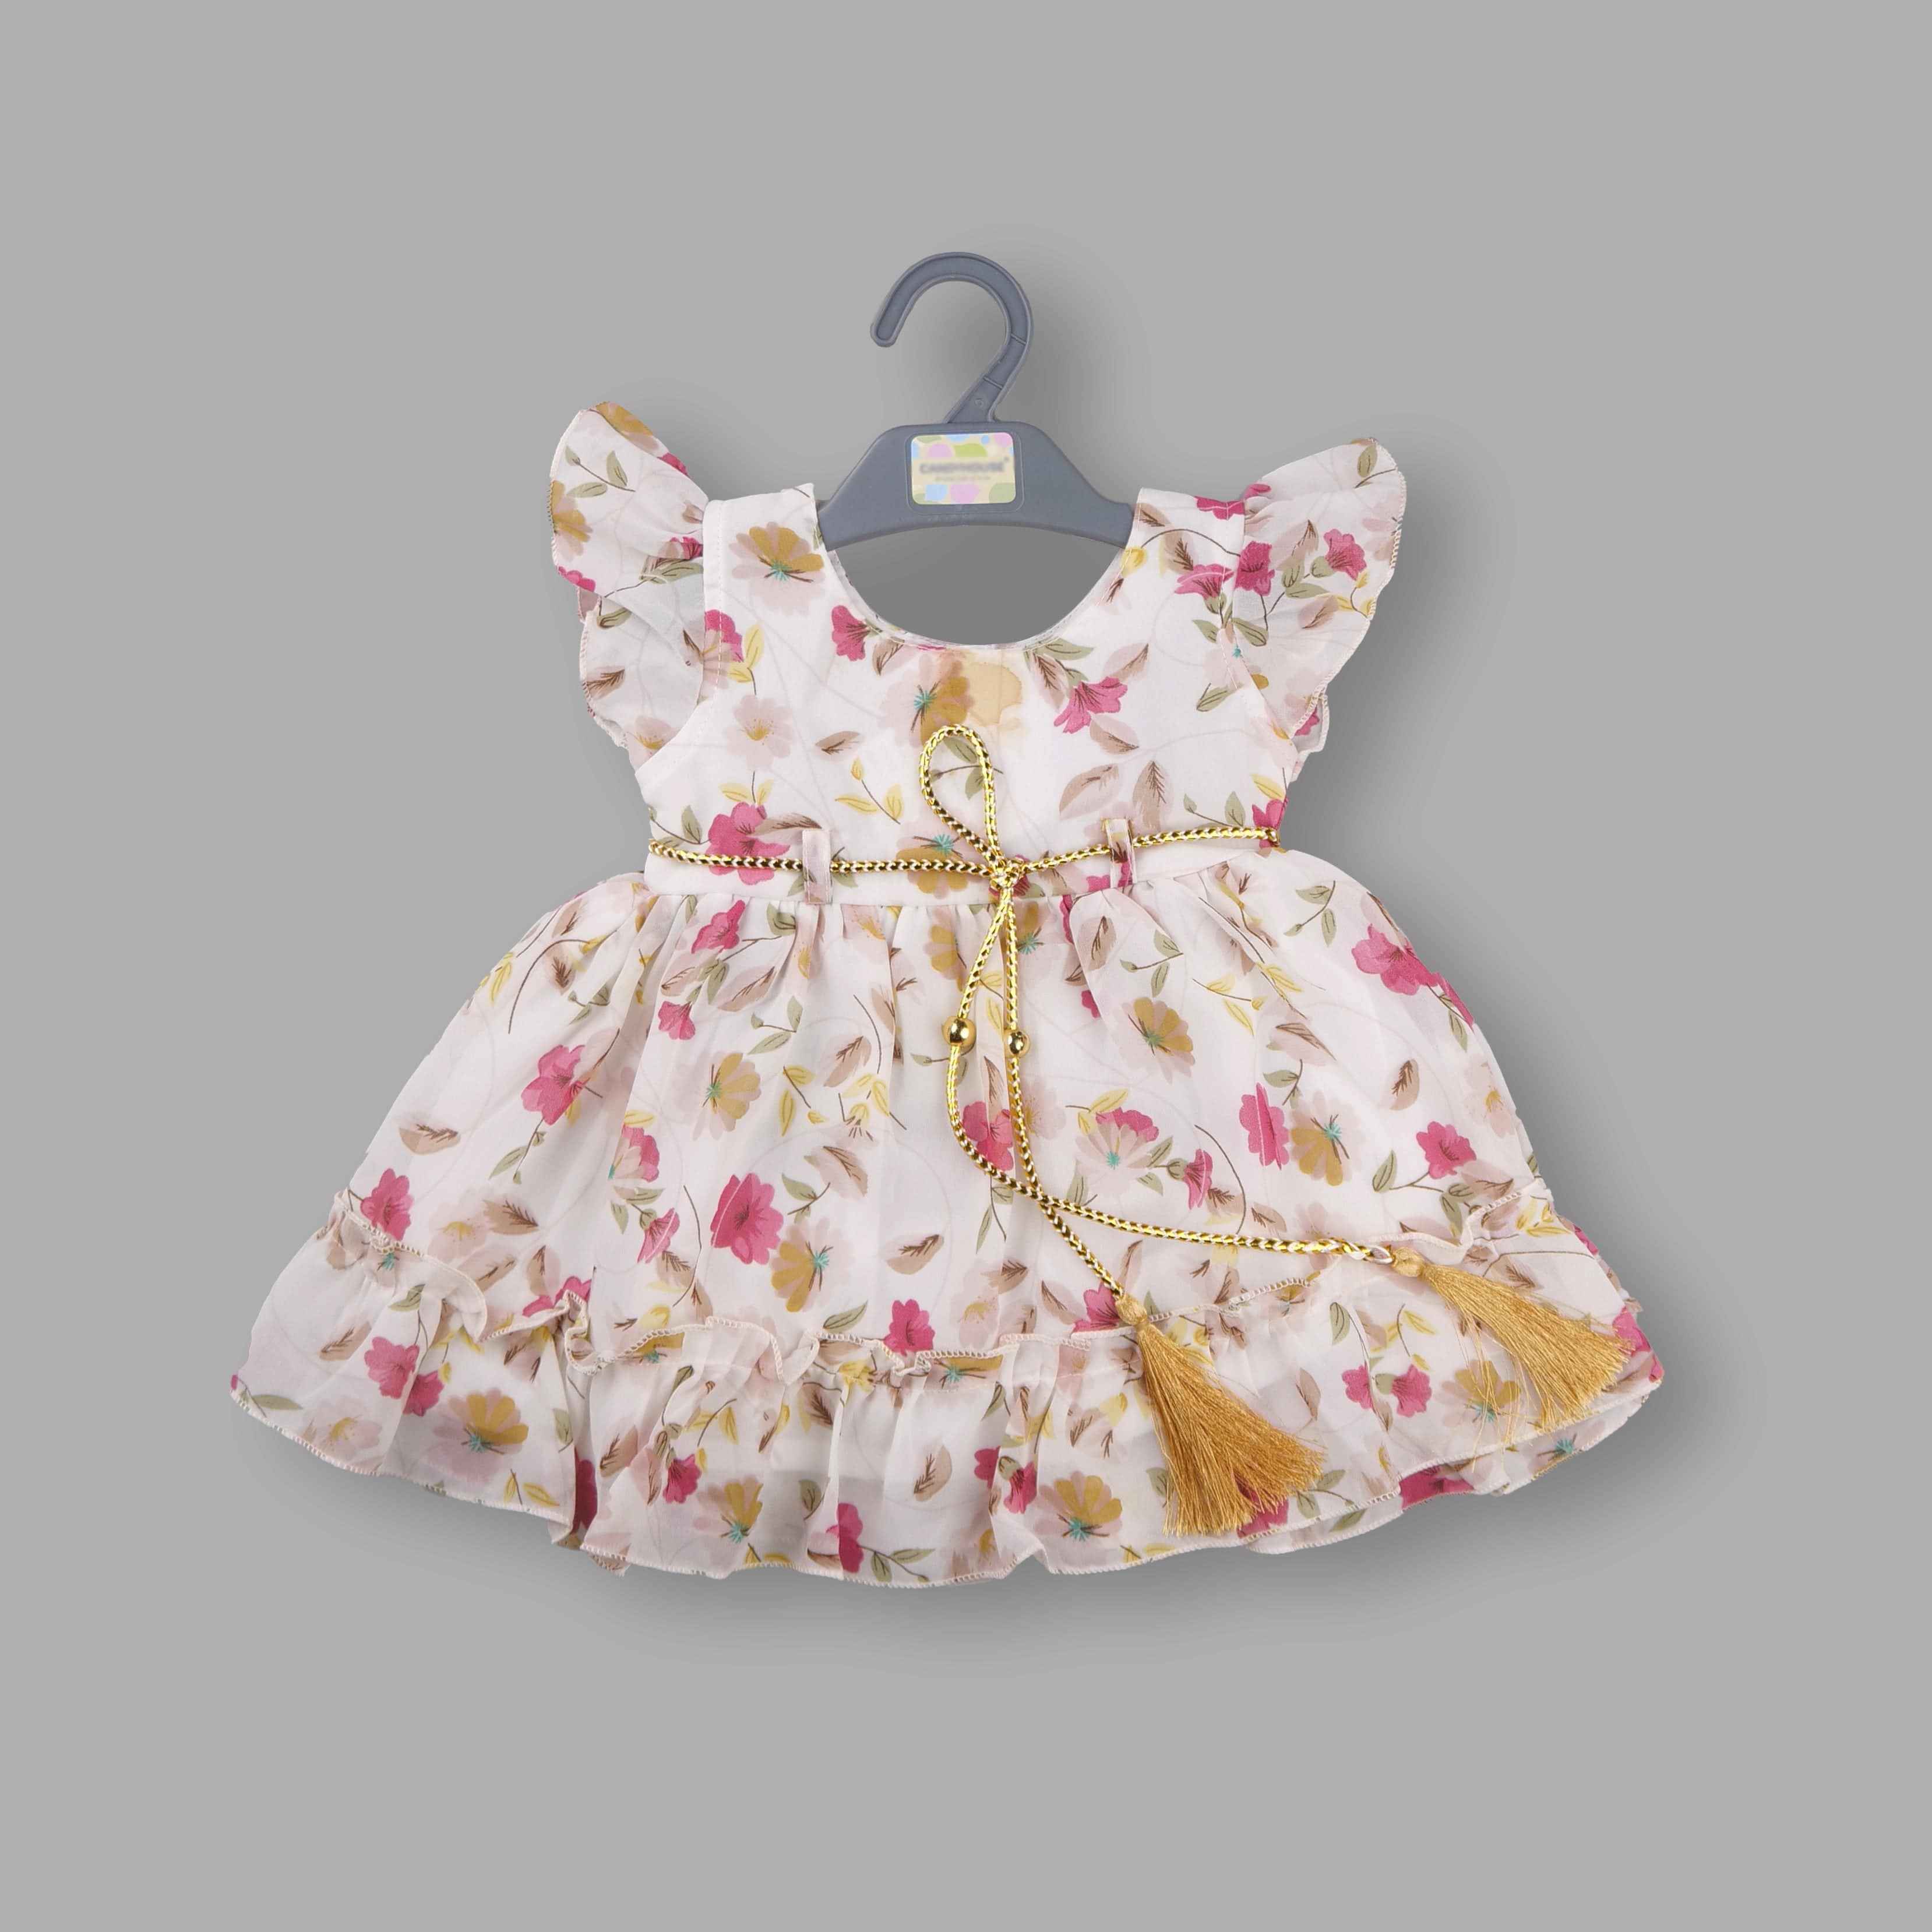 Baby Girls Cotton Frock Dress Ctn164nw – Wish Karo